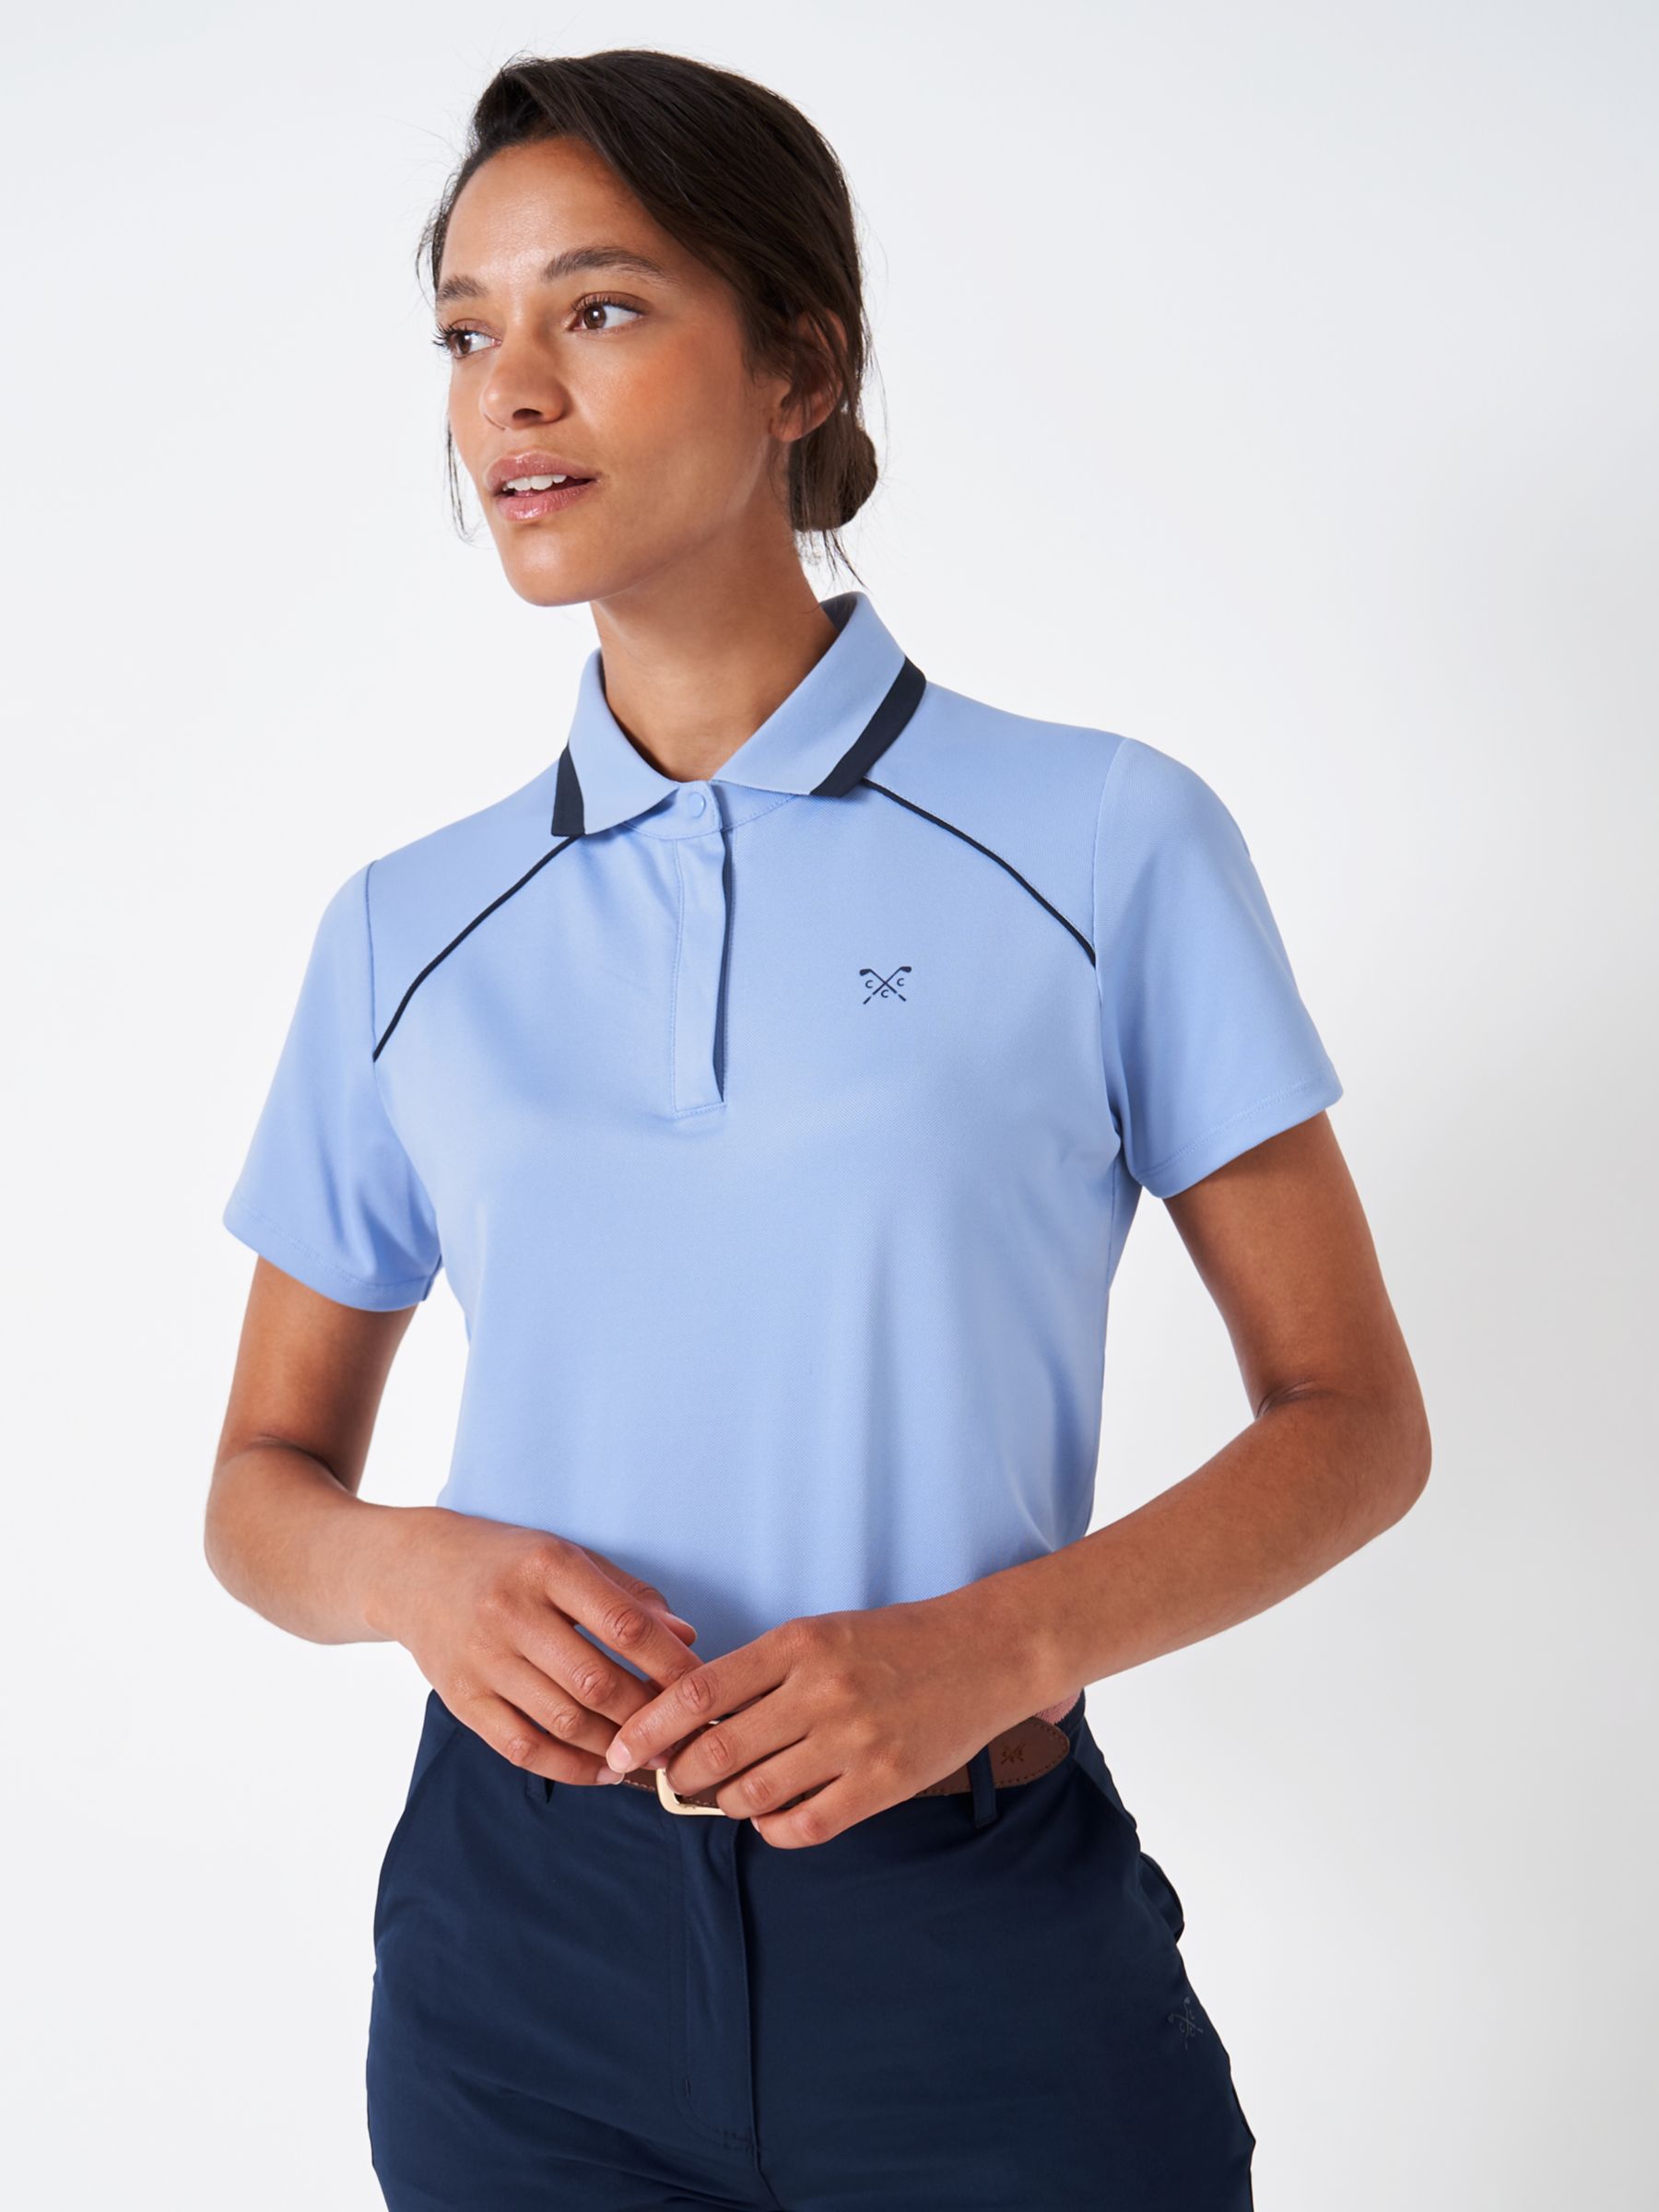 Рубашка-поло для гольфа из хлопка с кантом Crew Clothing, светло-синий рубашка поло praise obey clothing цвет light blue green